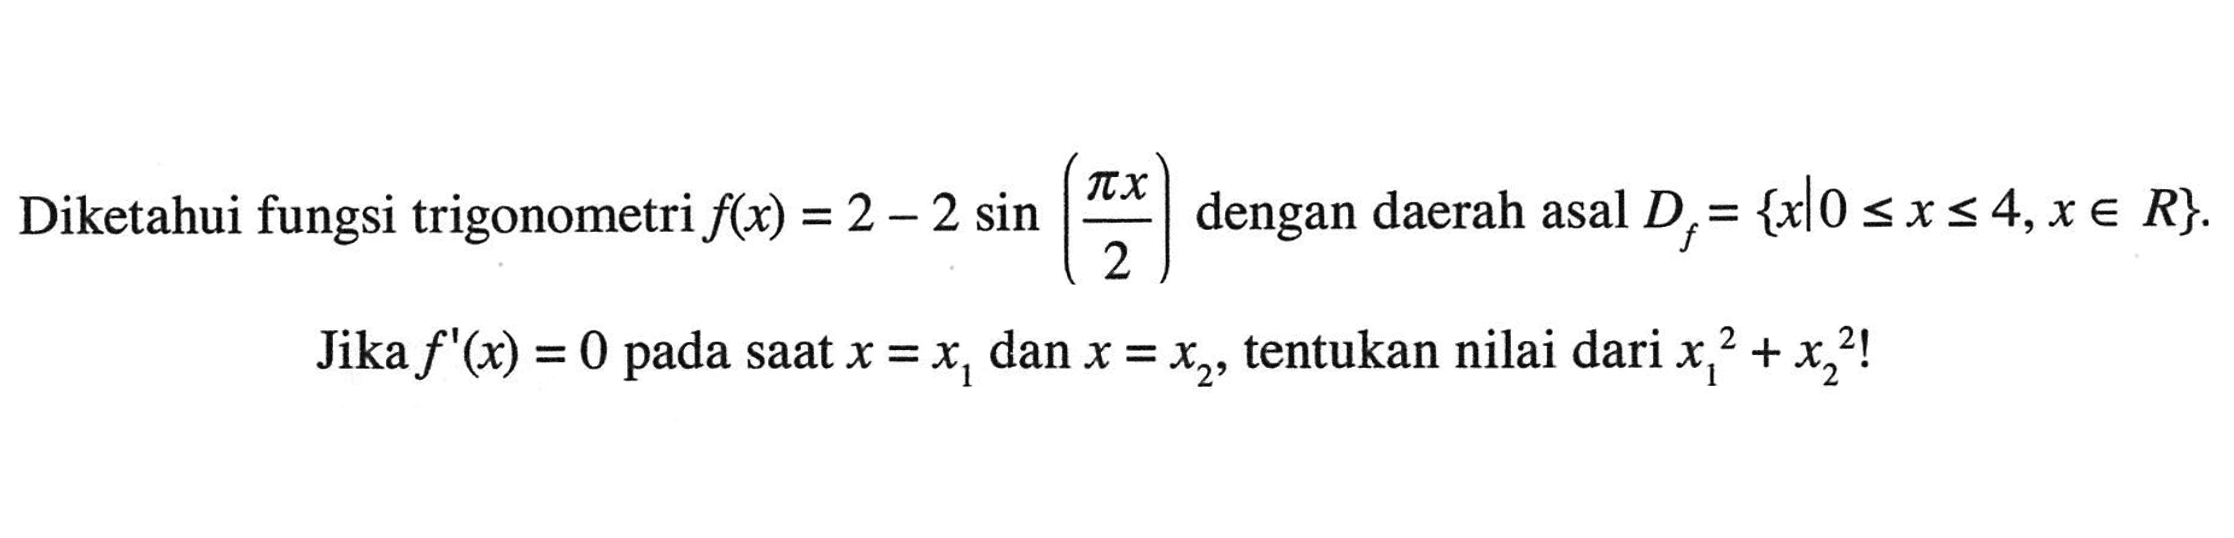 Diketahui fungsi trigonometri f(x) = 2 - 2 sin (pix/2) dengan daerah asal Df={x|0<=x<=4, x e R}. Jika f'(x)=0 pada saat x=x1 dan x=x2, tentukan nilai dari (x1)^2+(x2)^2!